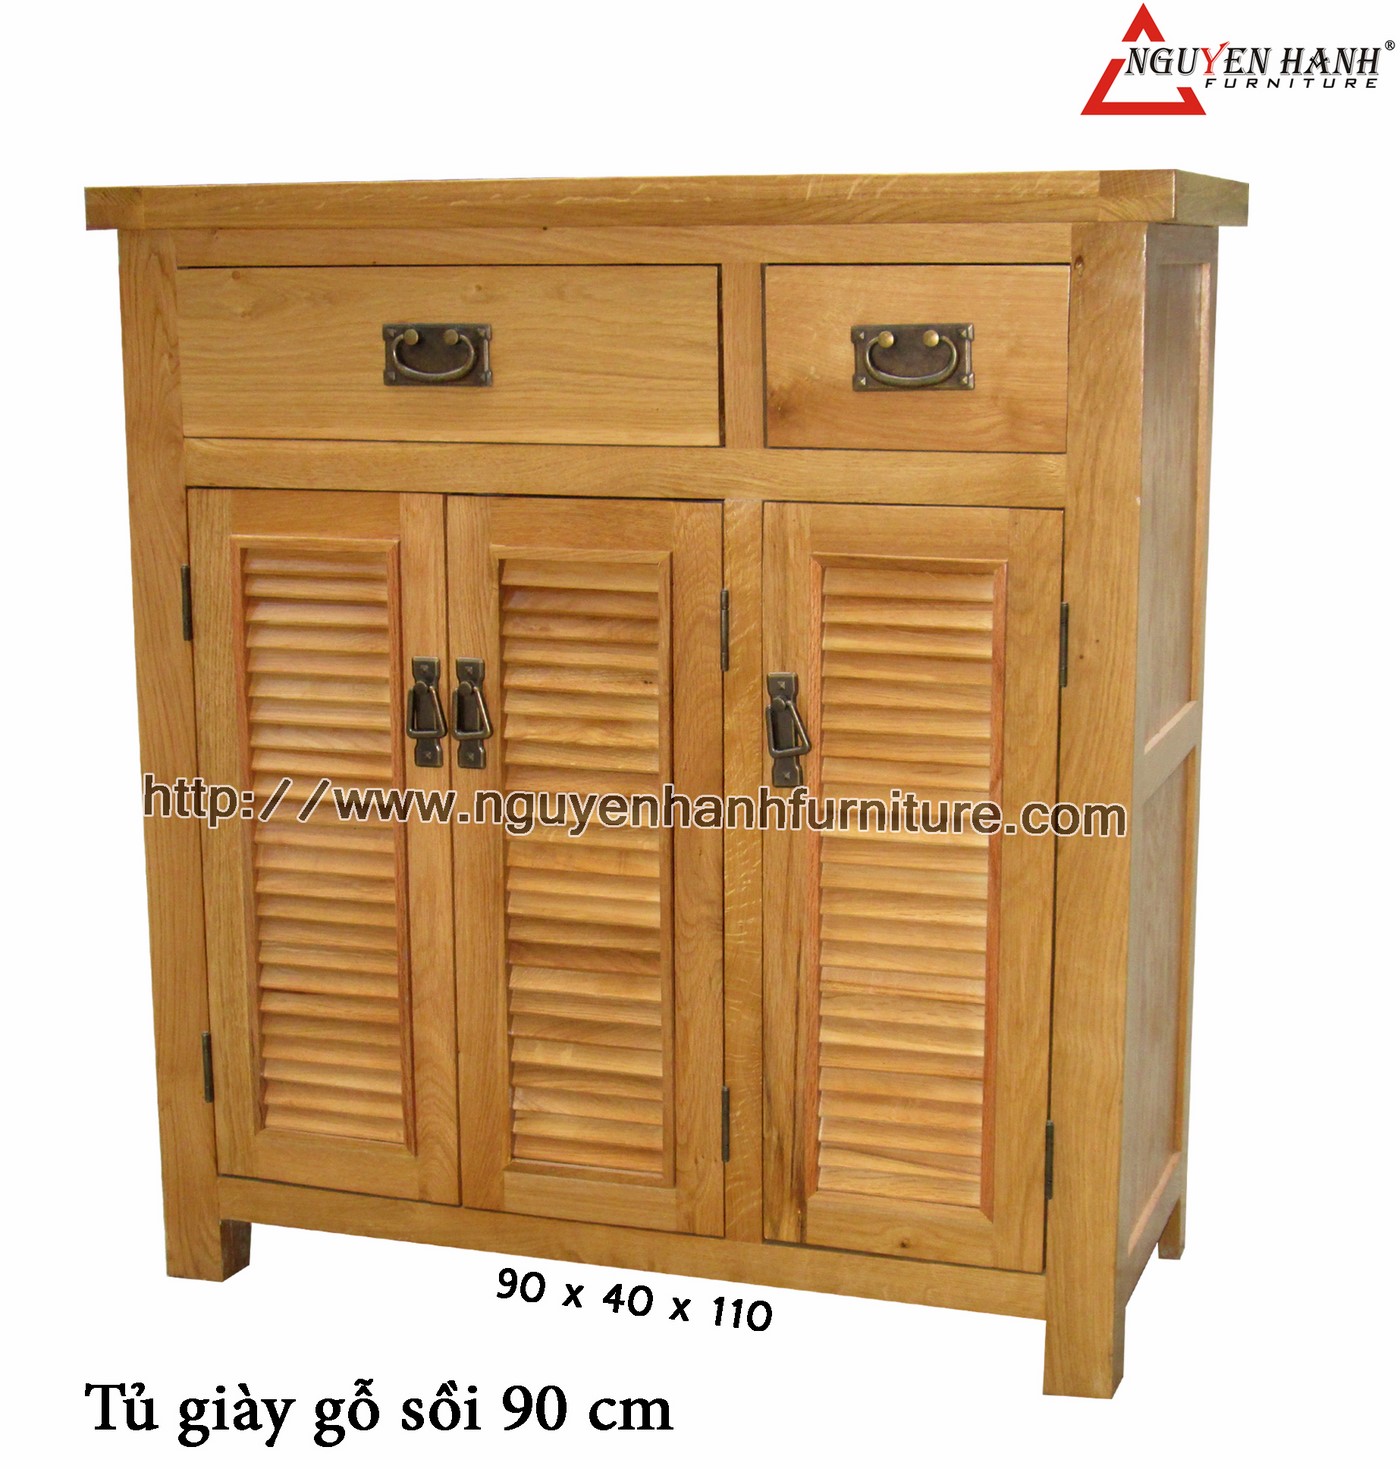 Name product: Oak wood Shoe Cabinet 90cm - Dimensions: 90 x 40 x 110 - Description: Wood natural oak